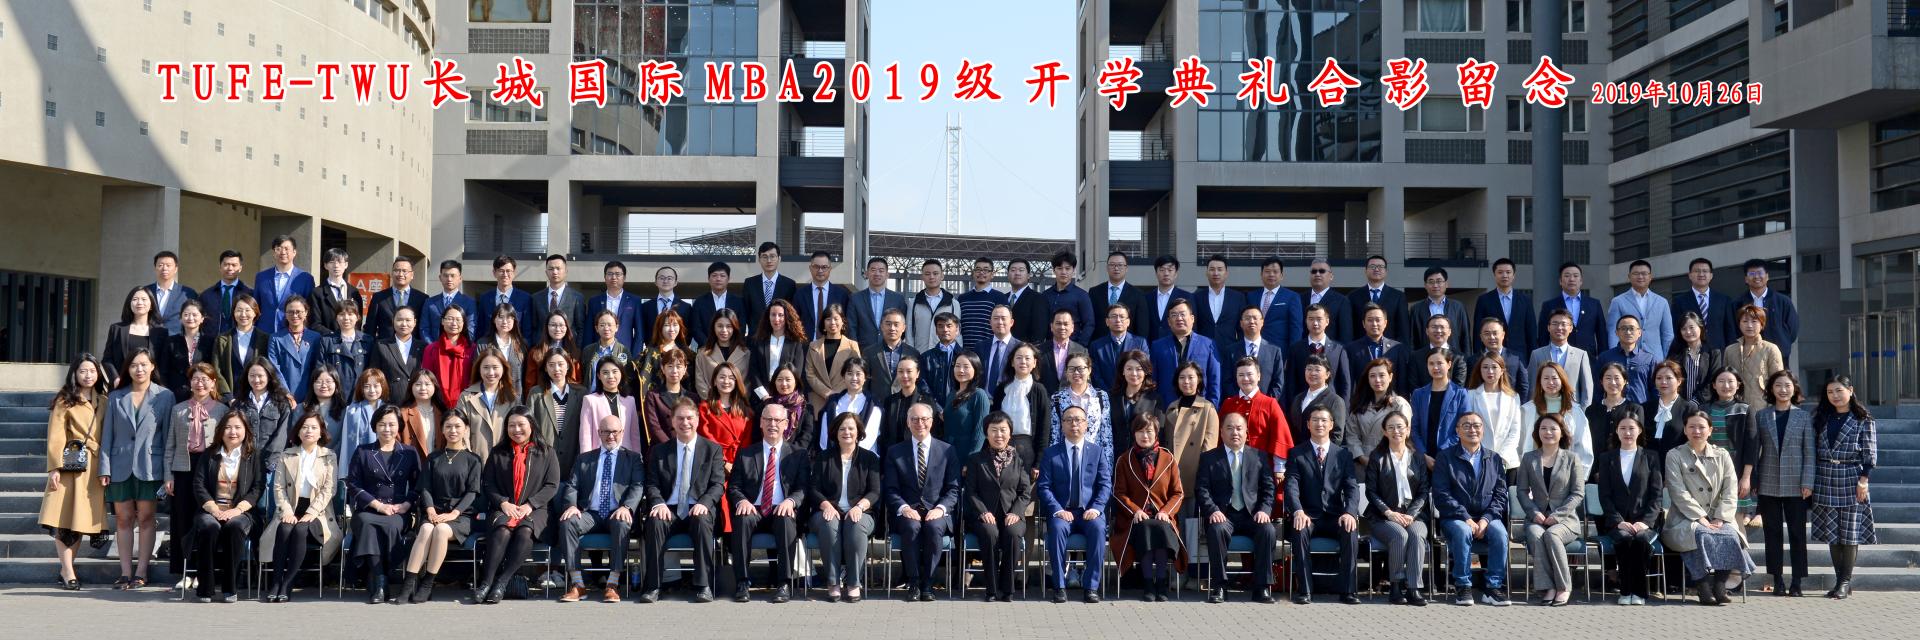 天津财经大学国际MBA-开学典礼合影